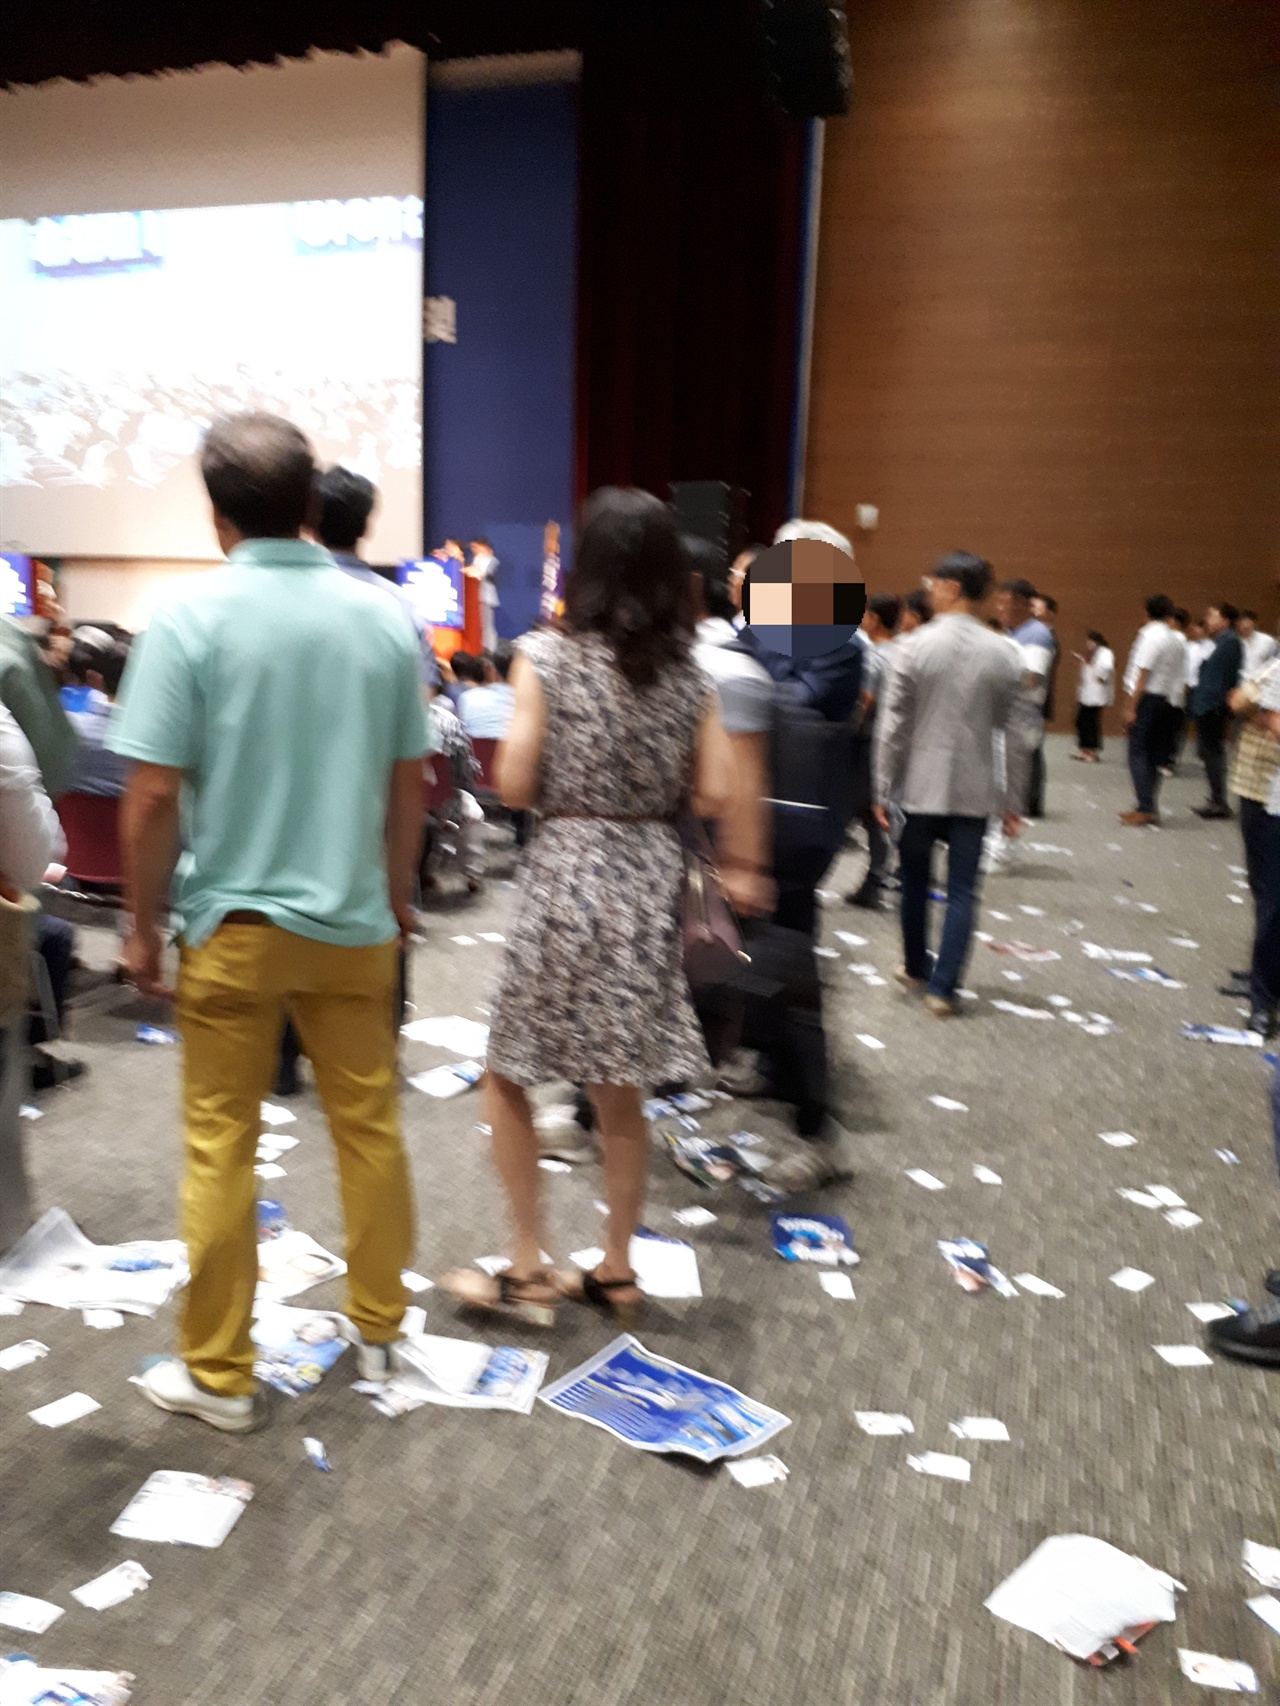 전당대회가 열린 행사장 바닥에 지지자들이 버린 후보자 홍보물이 곳곳에 놓여 있다.